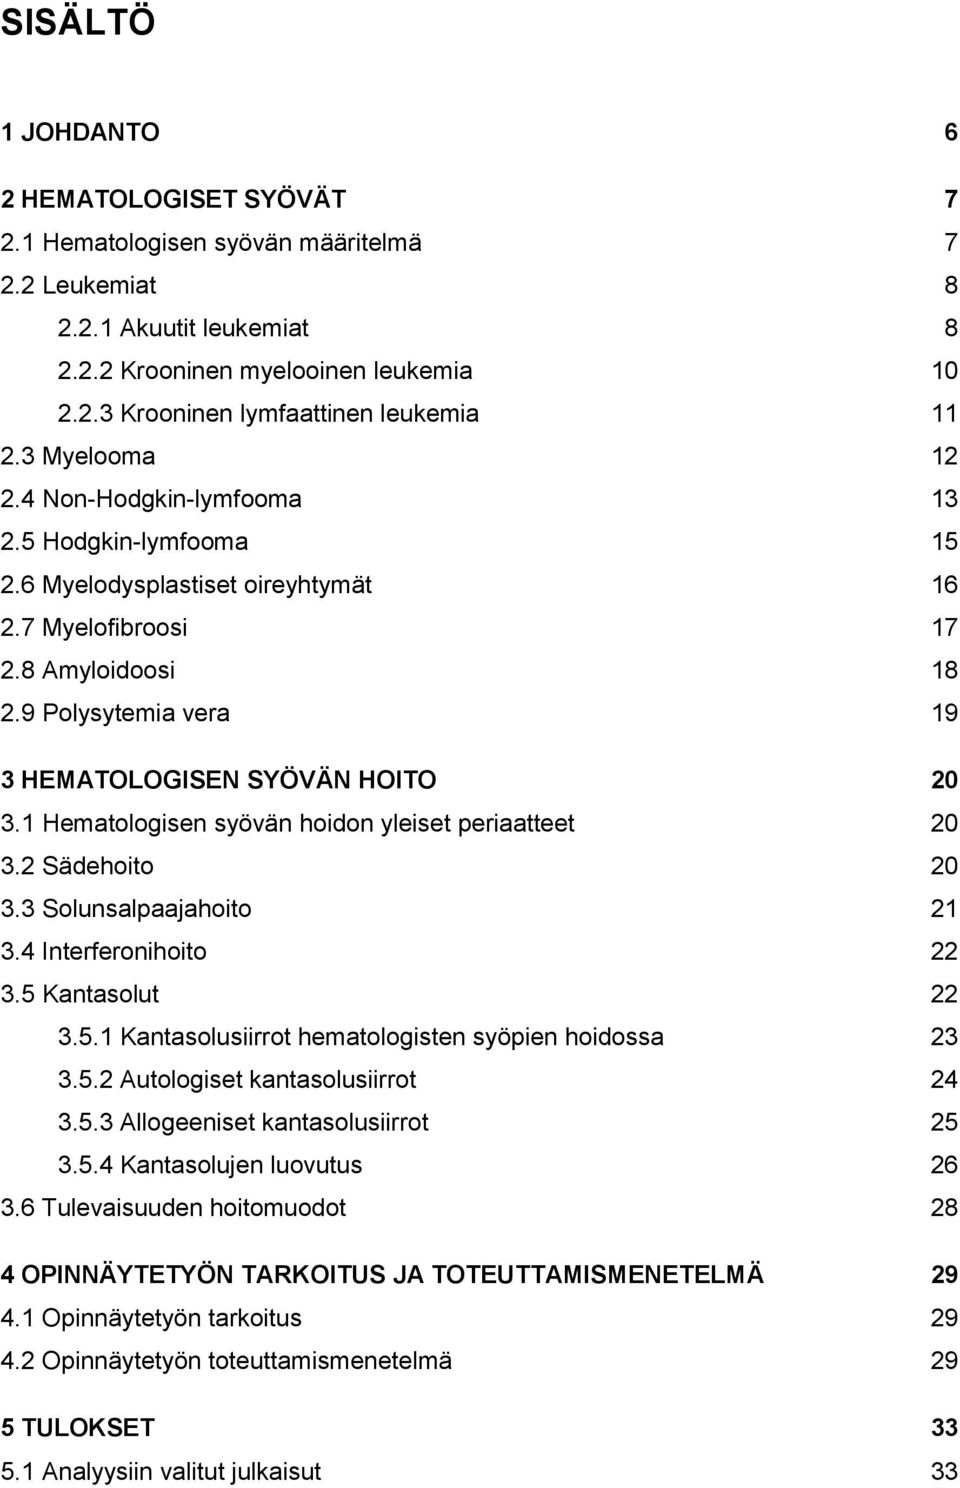 9 Polysytemia vera 19 3 HEMATOLOGISEN SYÖVÄN HOITO 20 3.1 Hematologisen syövän hoidon yleiset periaatteet 20 3.2 Sädehoito 20 3.3 Solunsalpaajahoito 21 3.4 Interferonihoito 22 3.5 